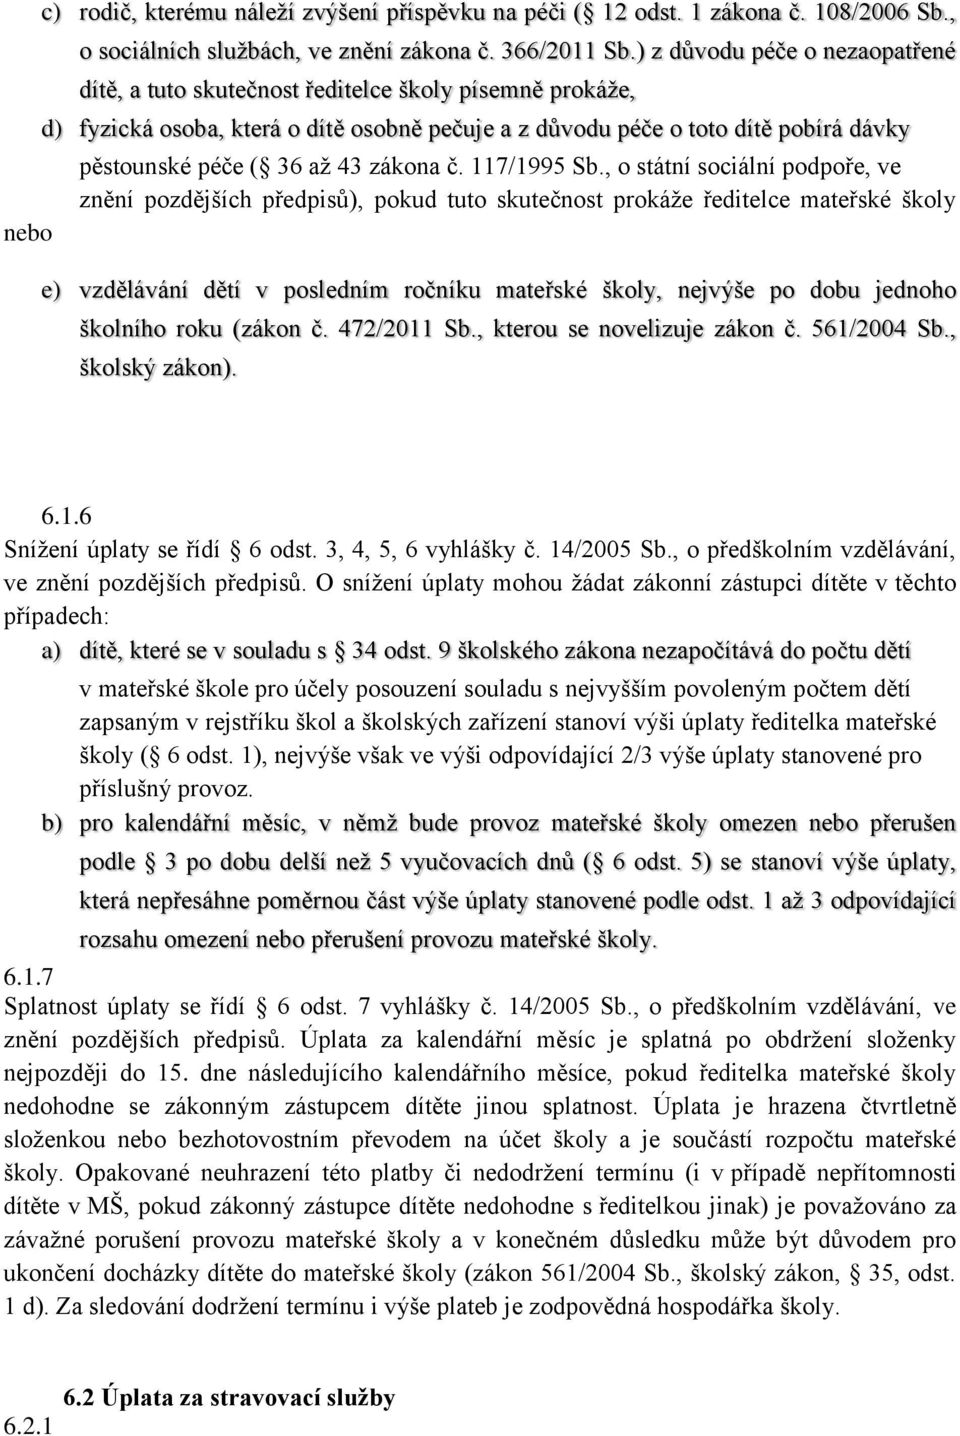 43 zákona č. 117/1995 Sb.